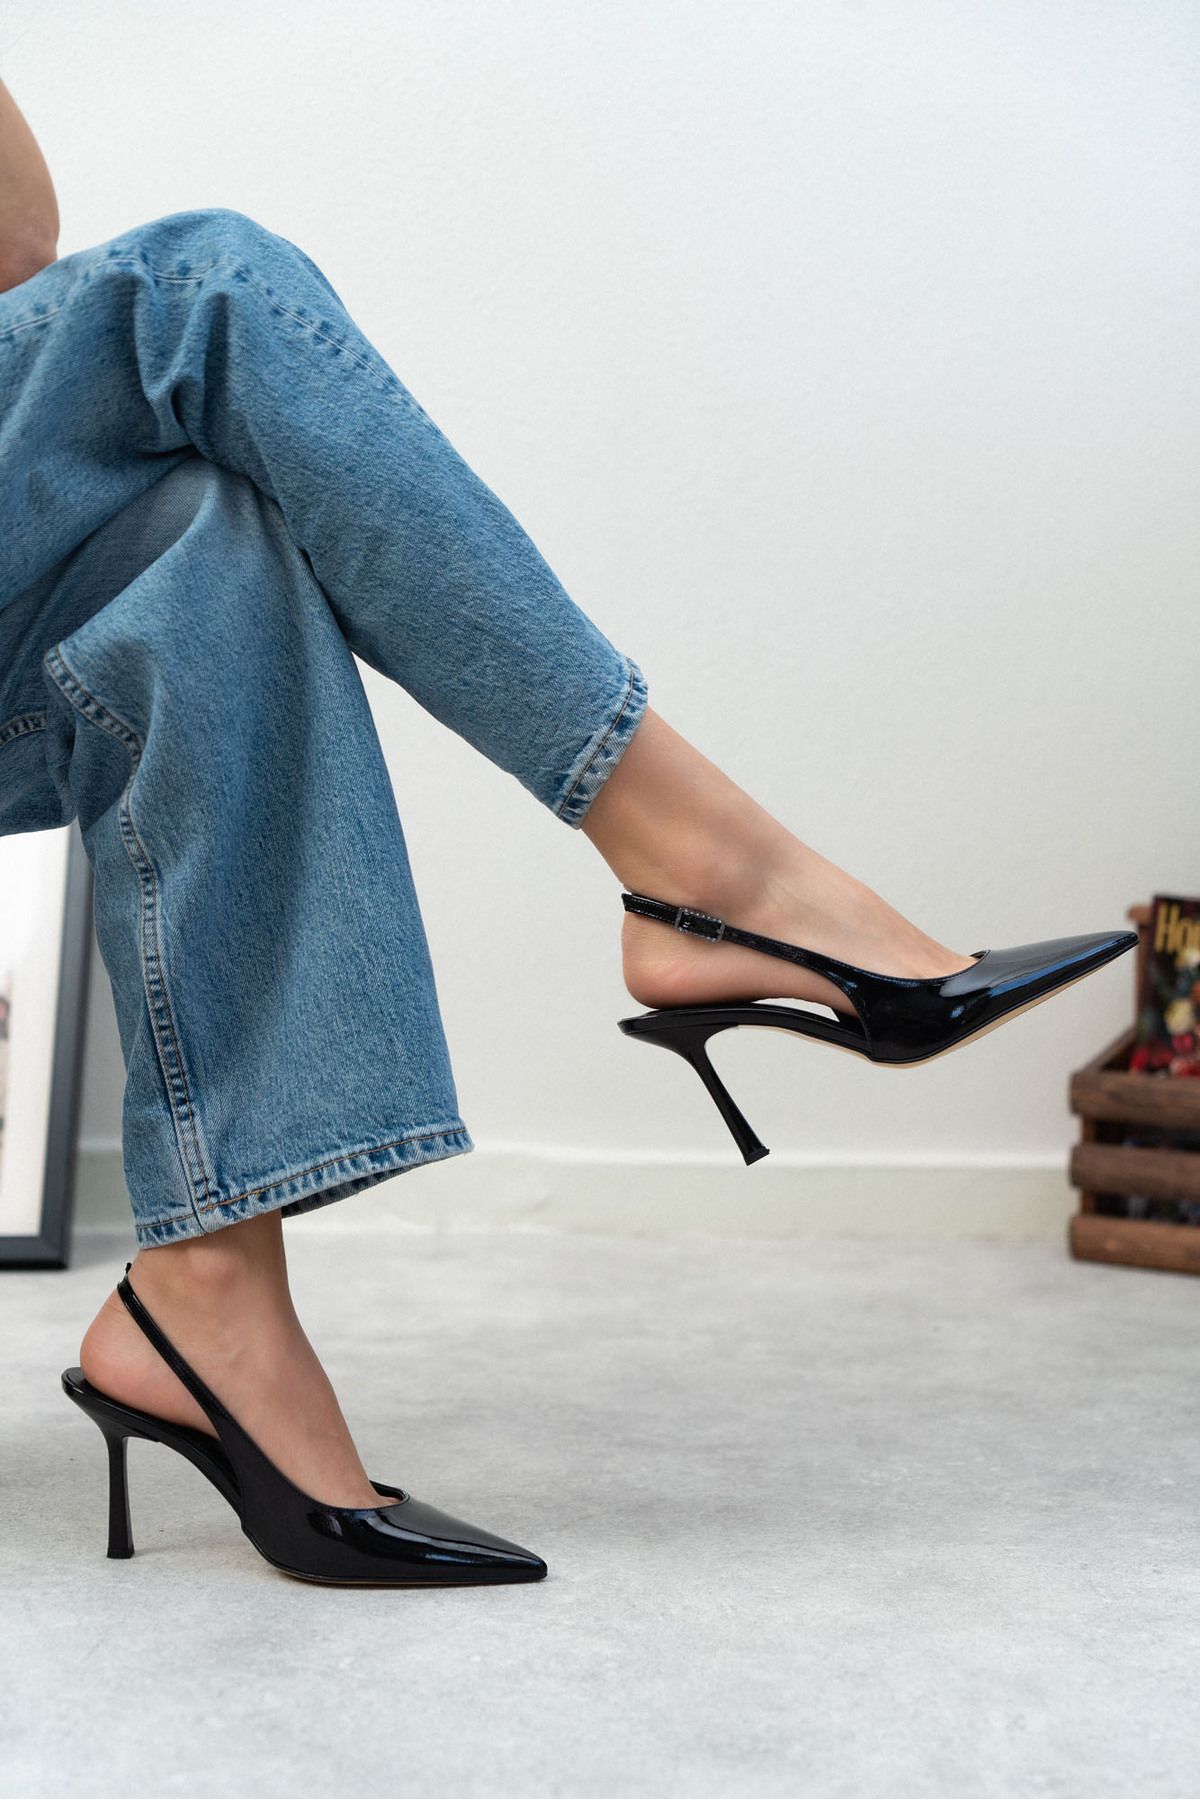 NİŞANTAŞI SHOES Mendy Siyah Rugan Kemer Detay Sivri Burun Kadın Topuklu Ayakkabı